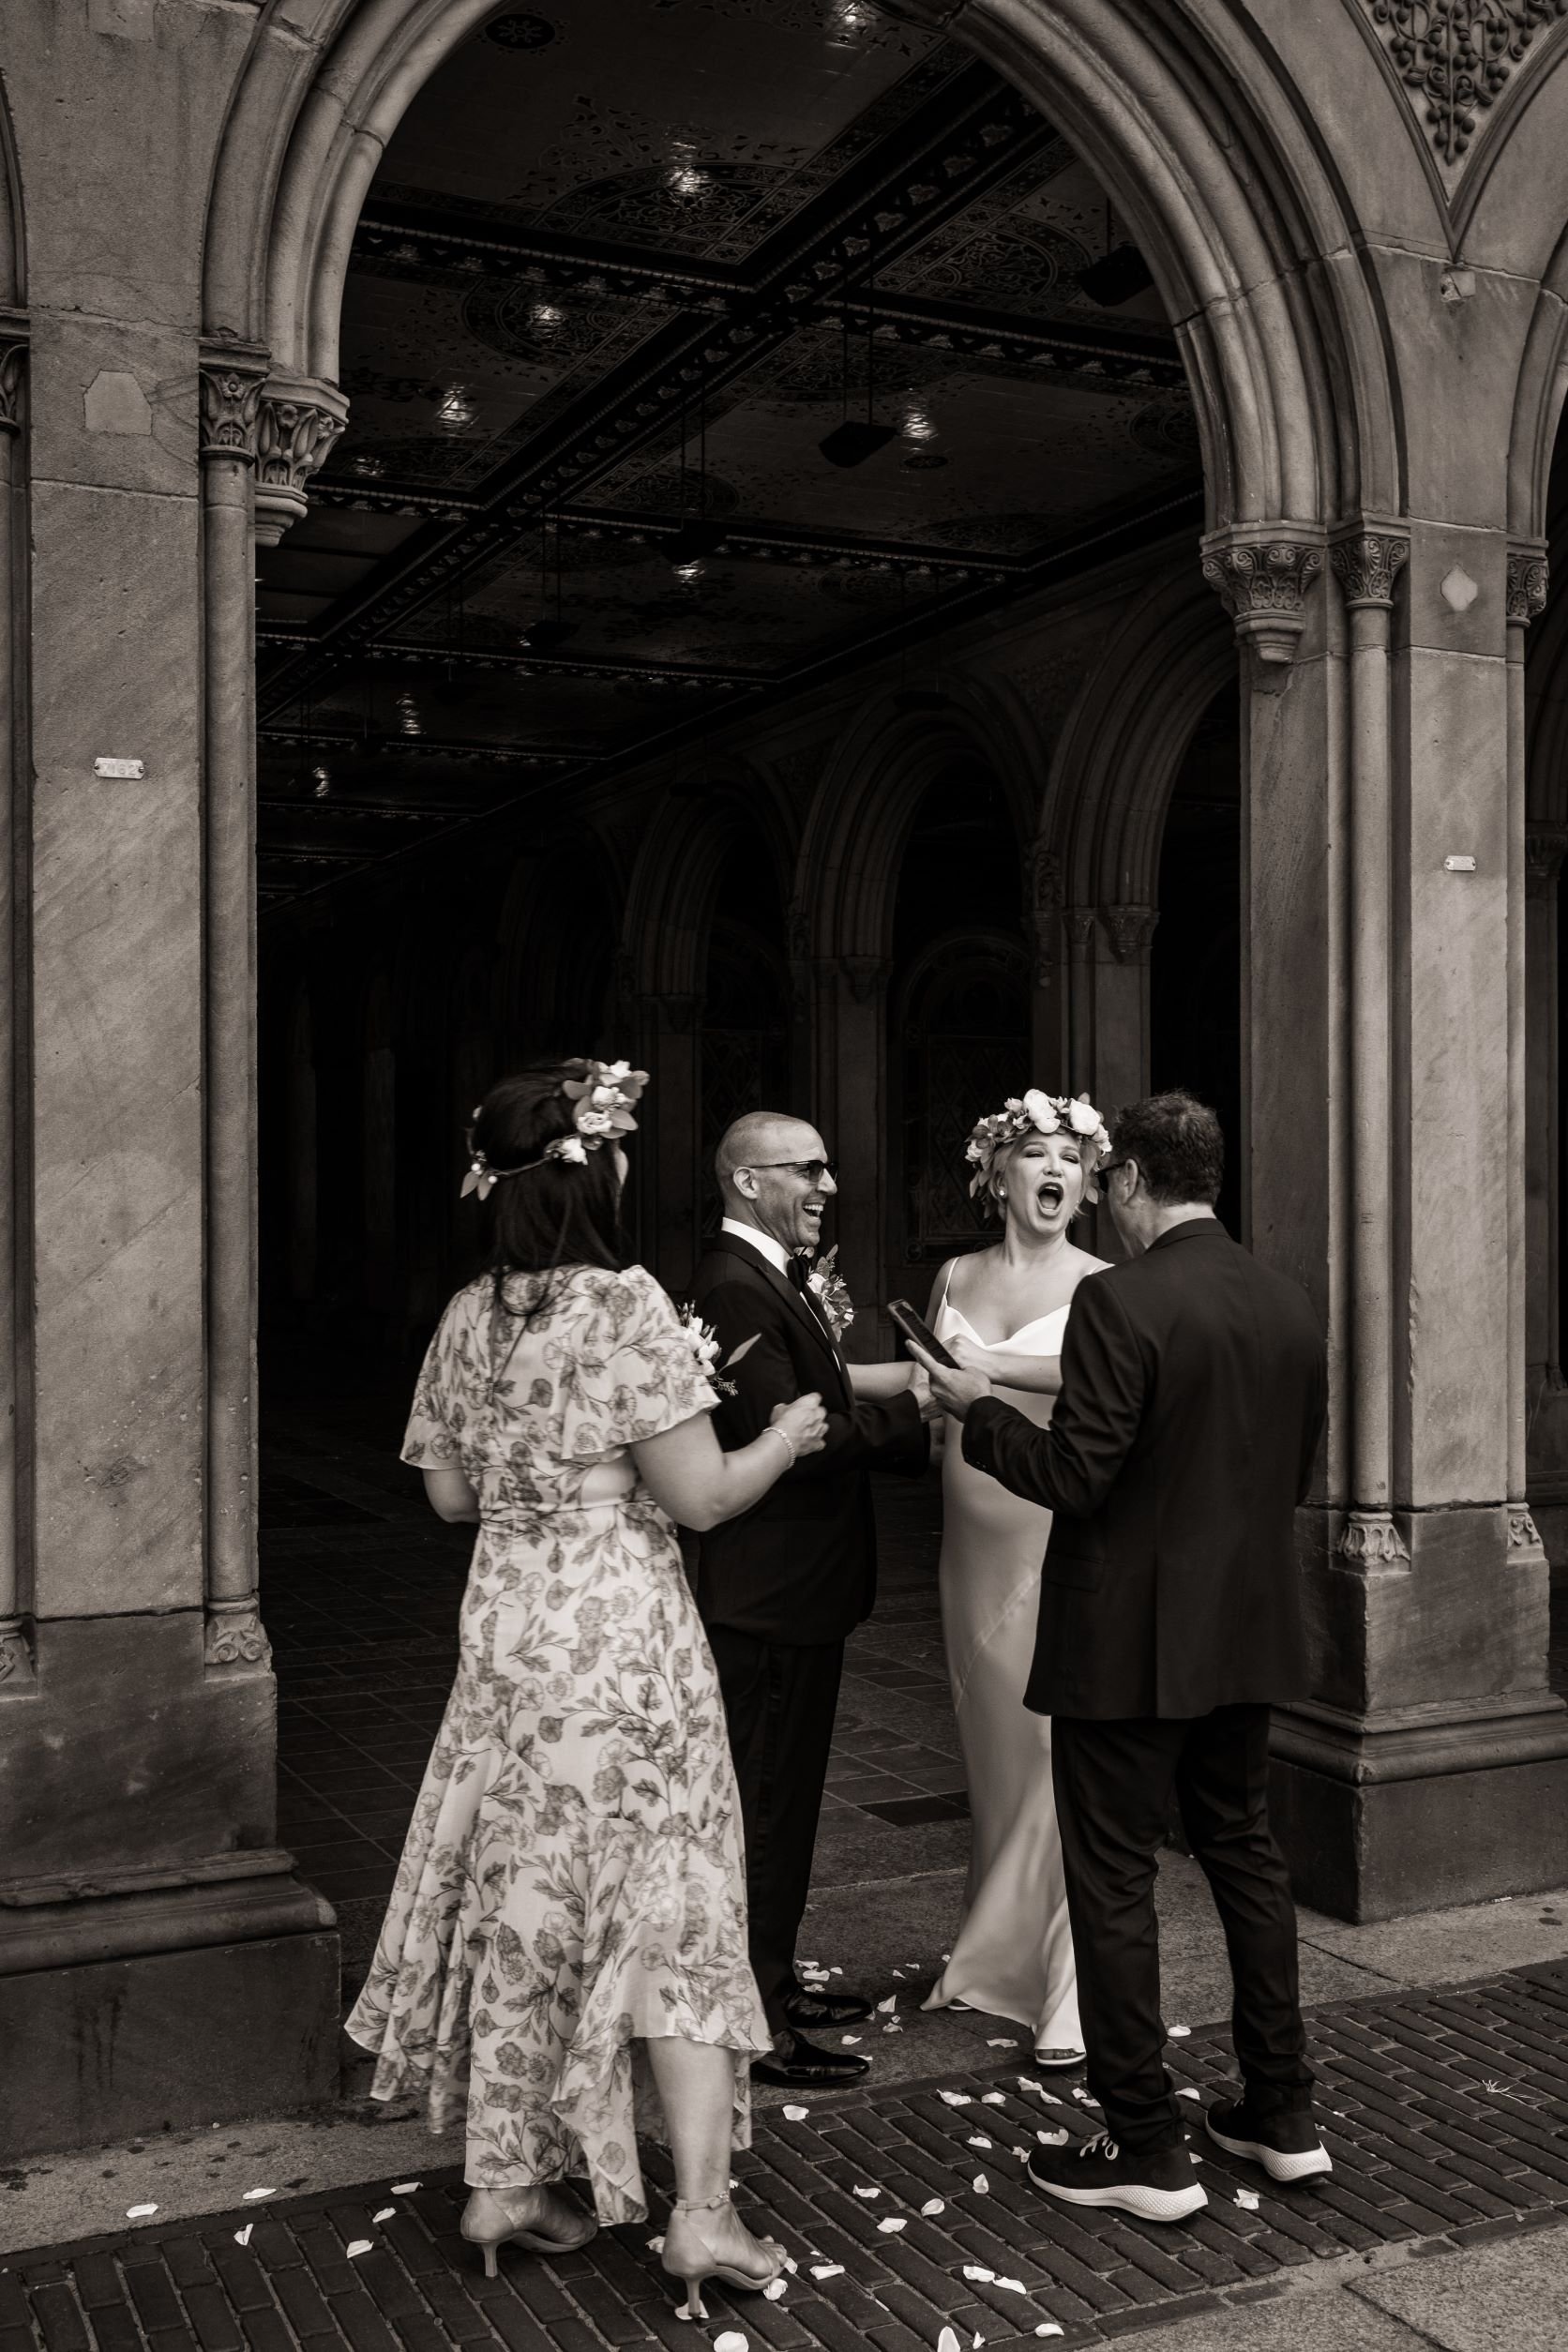 Central Park Wedding Photography 3-min.jpg